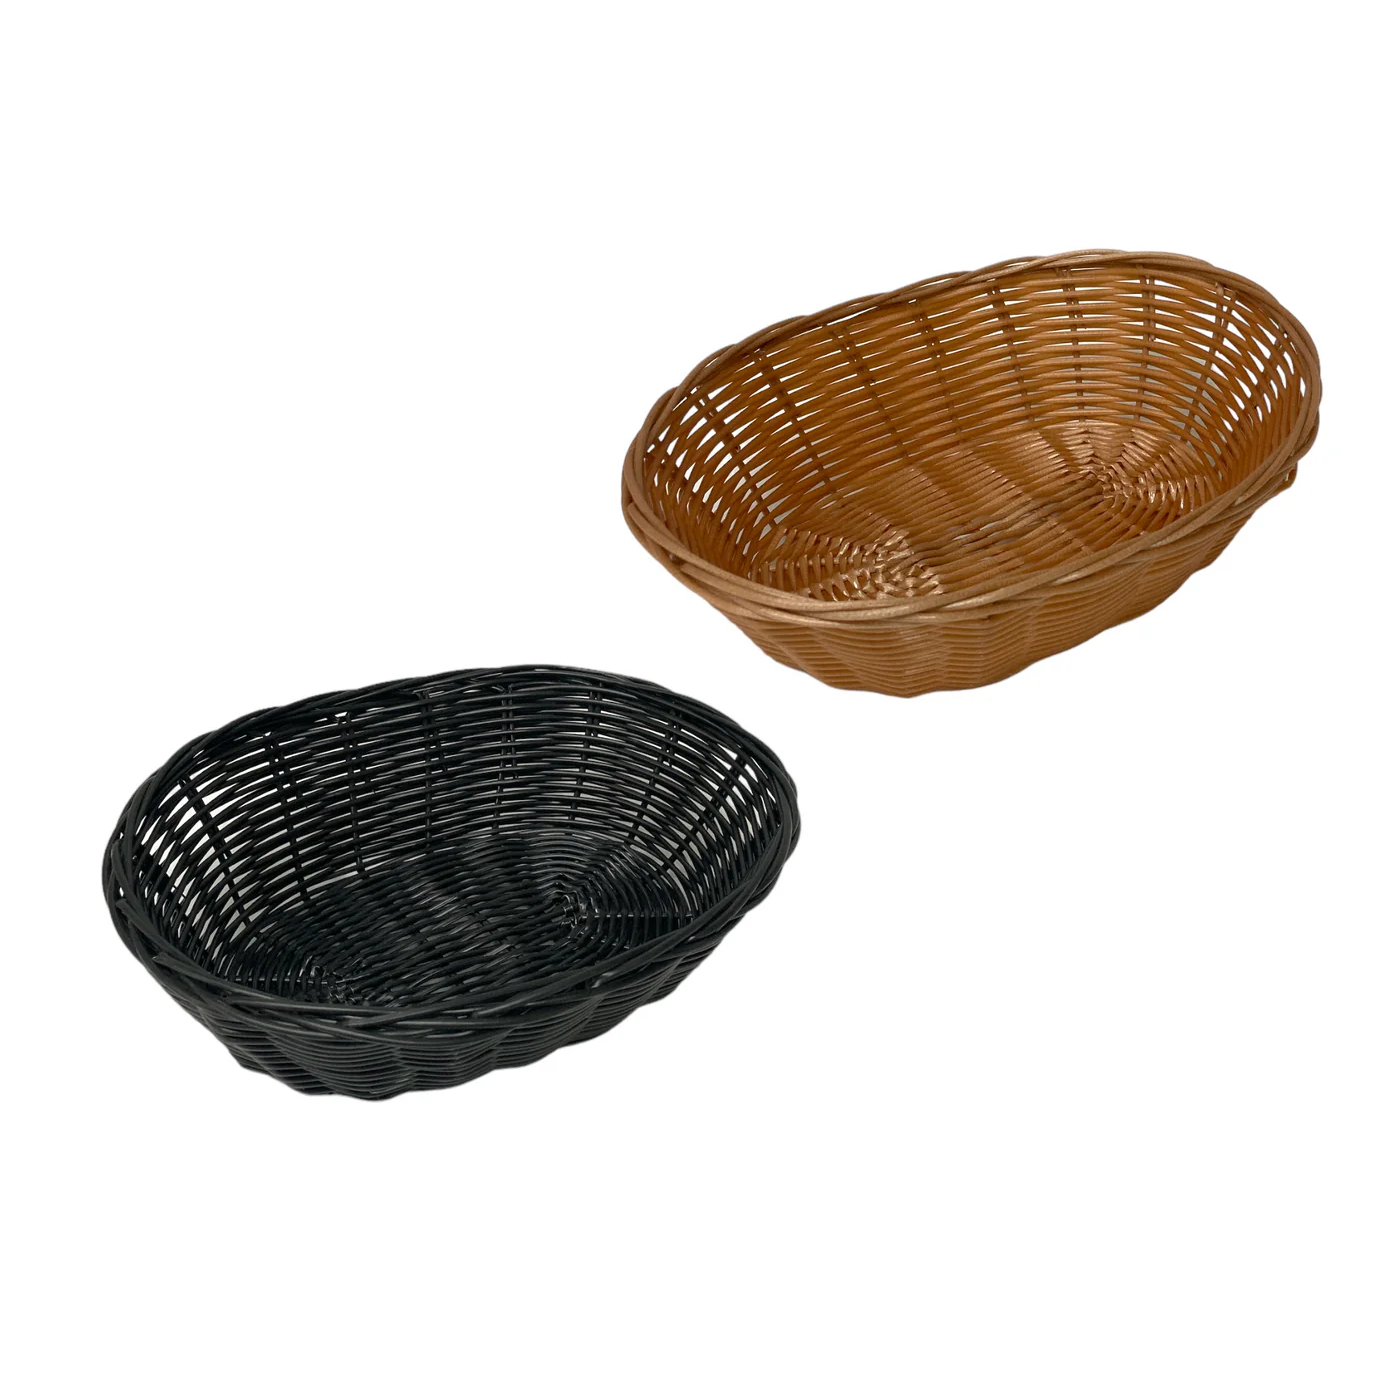 Oval woven bread basket 24 cm Plastic Woven Wicker - Lunaz Shop